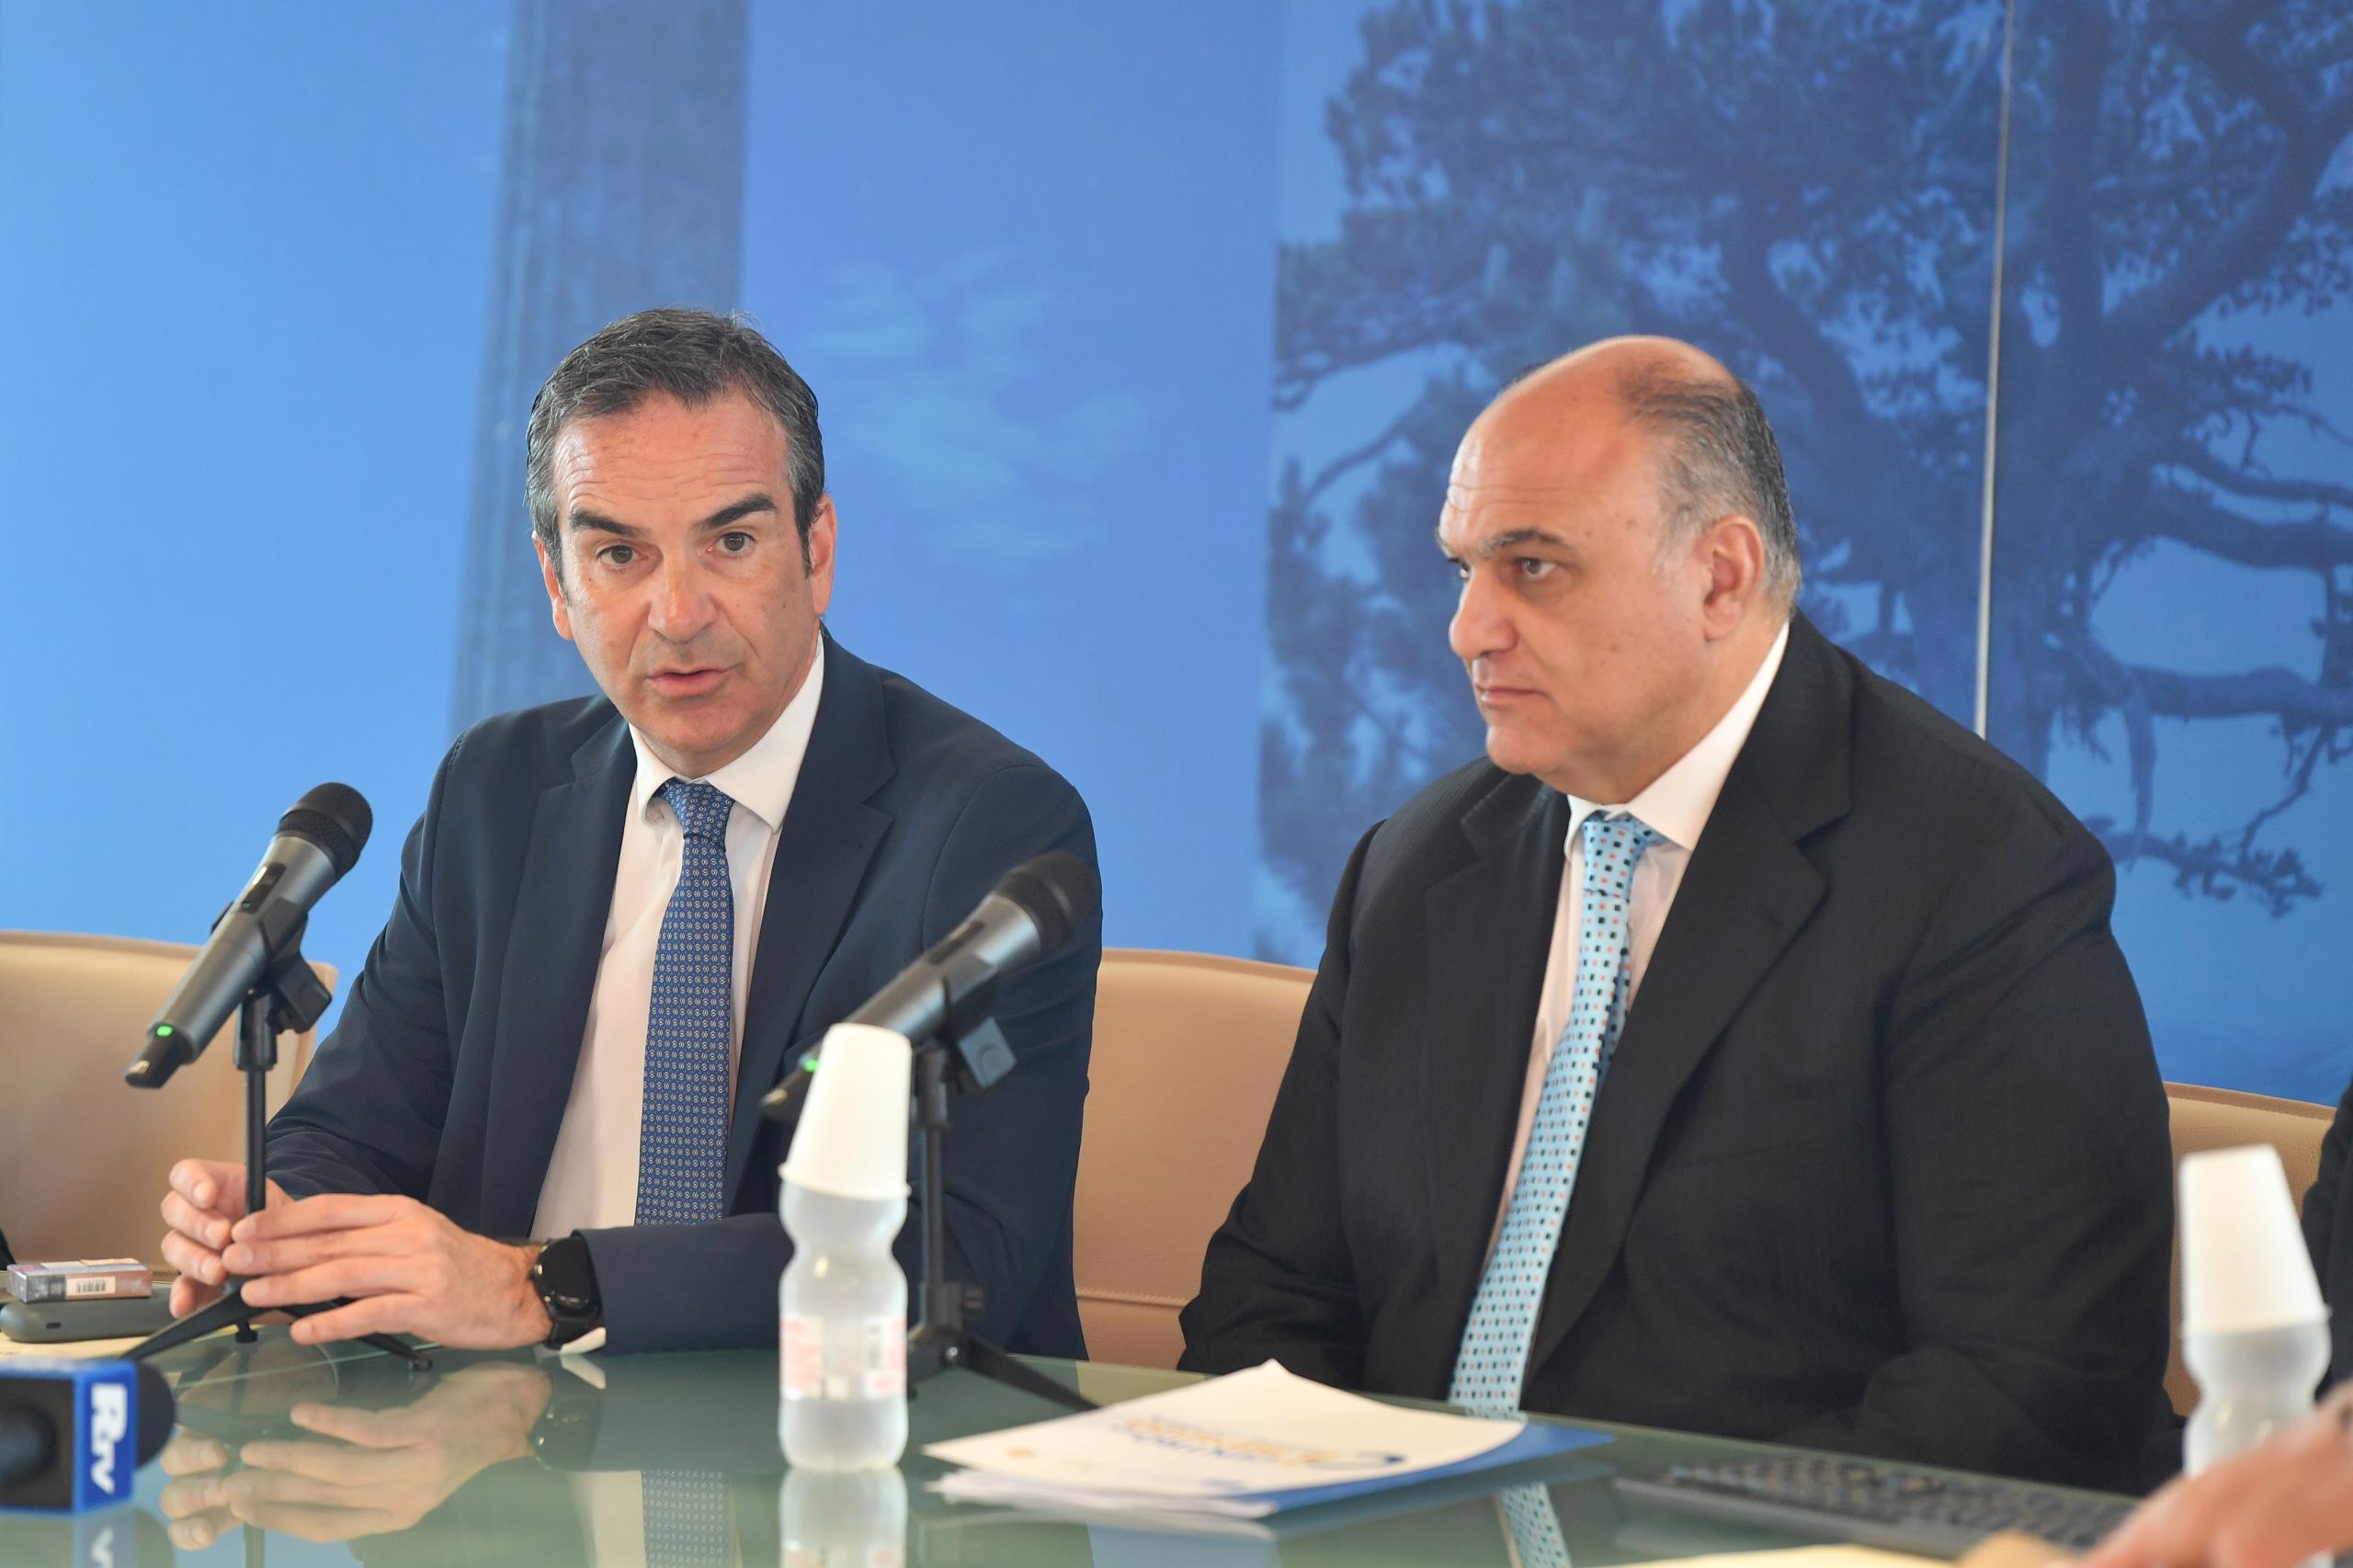 Presentato l’Avviso Dunamis, Occhiuto e Calabrese: “La Regione Calabria al fianco delle imprese per stimolare il mercato del lavoro”